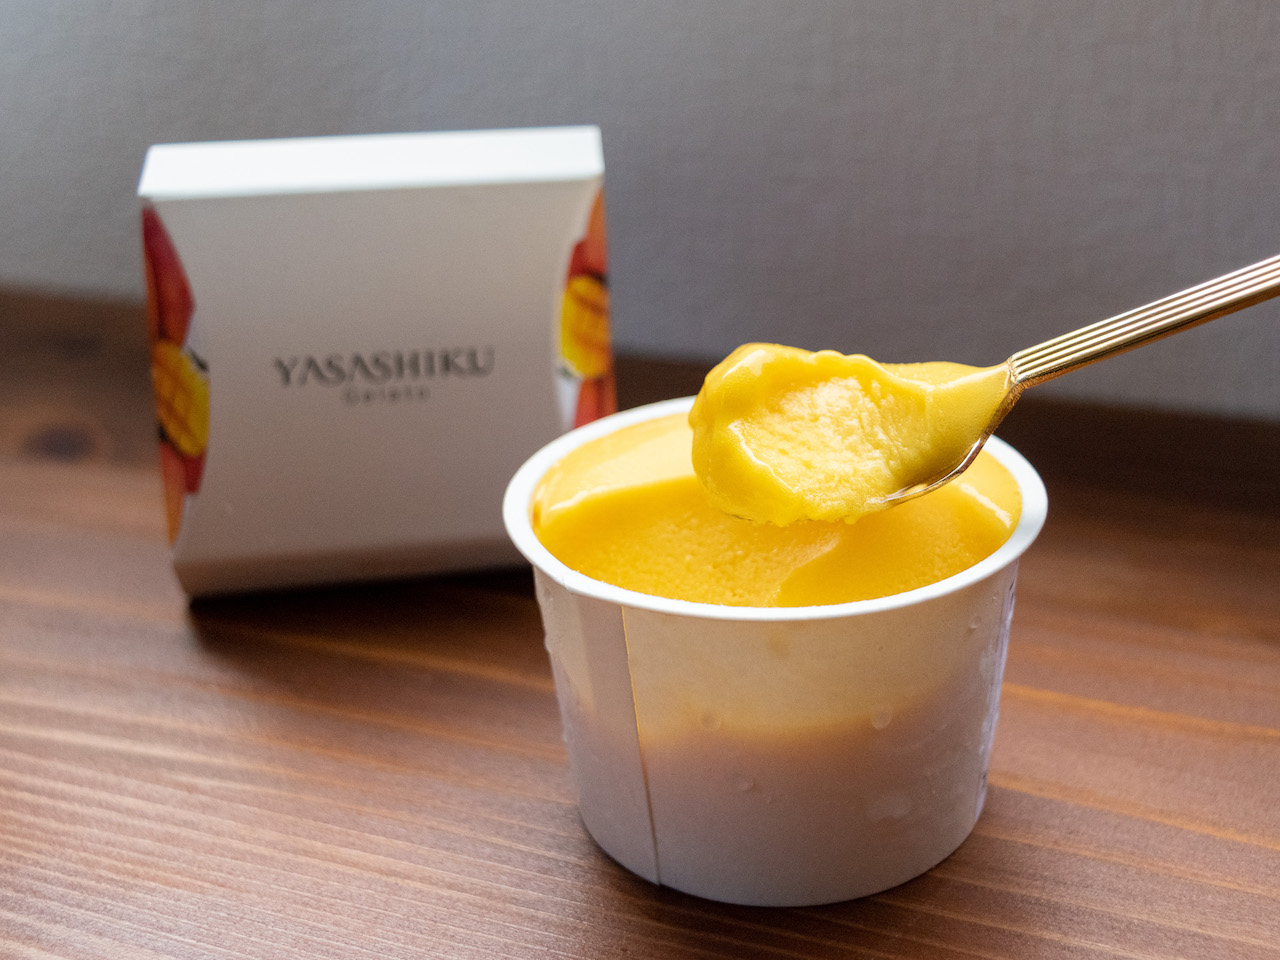 宮崎県産完熟マンゴーを贅沢に使用した「マンゴー」。